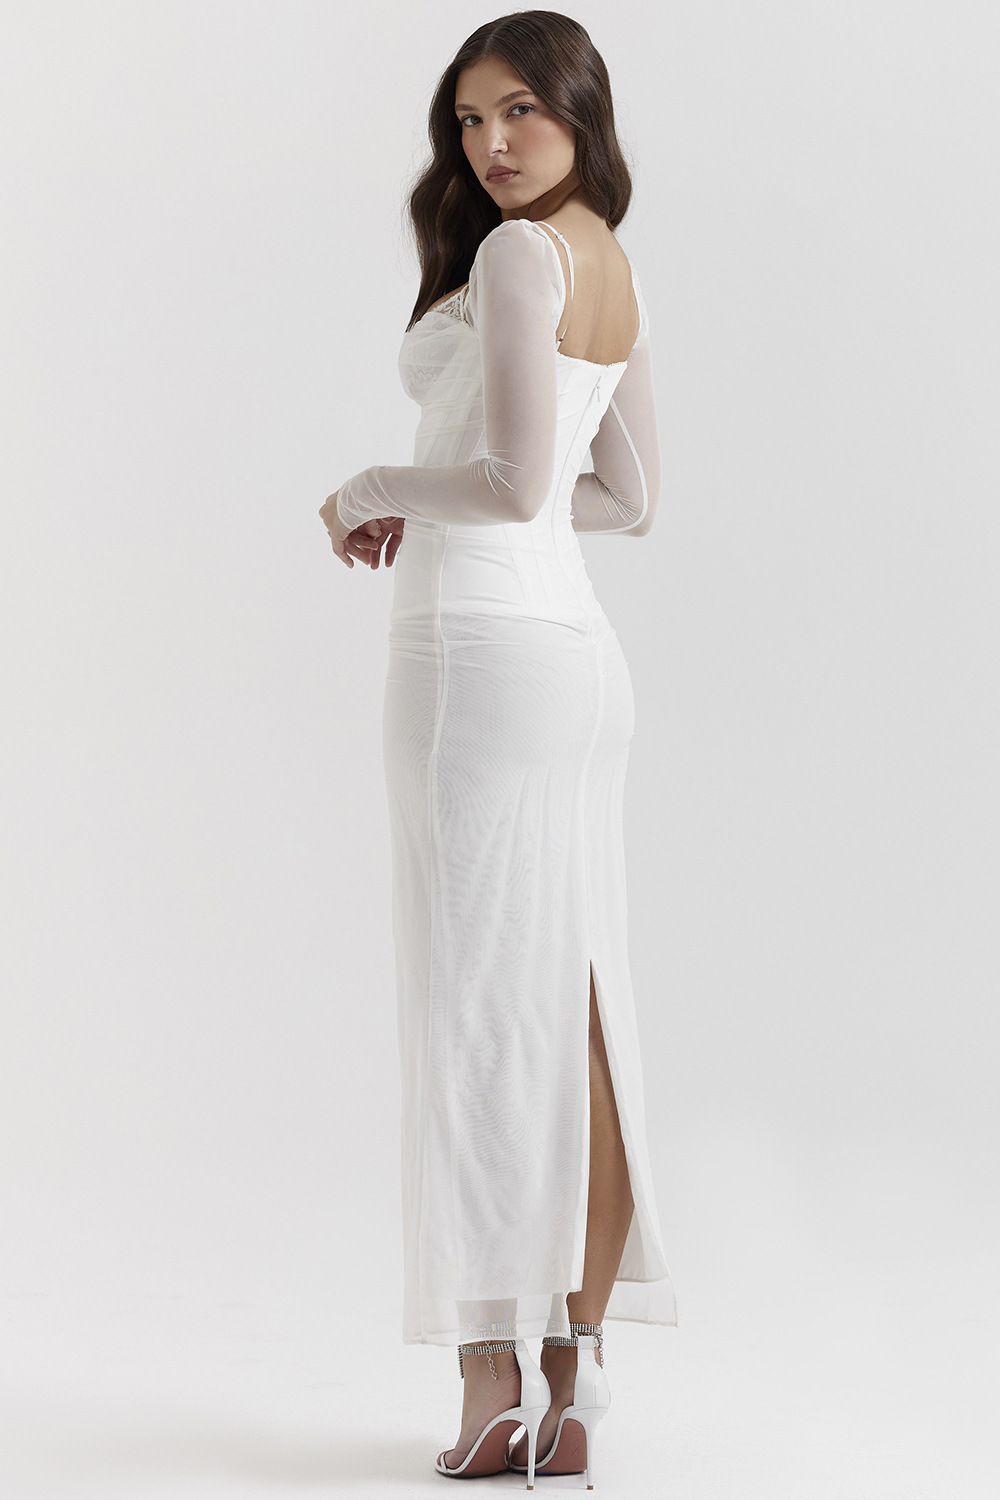 Fashion long sleeve halter split slim dress for women